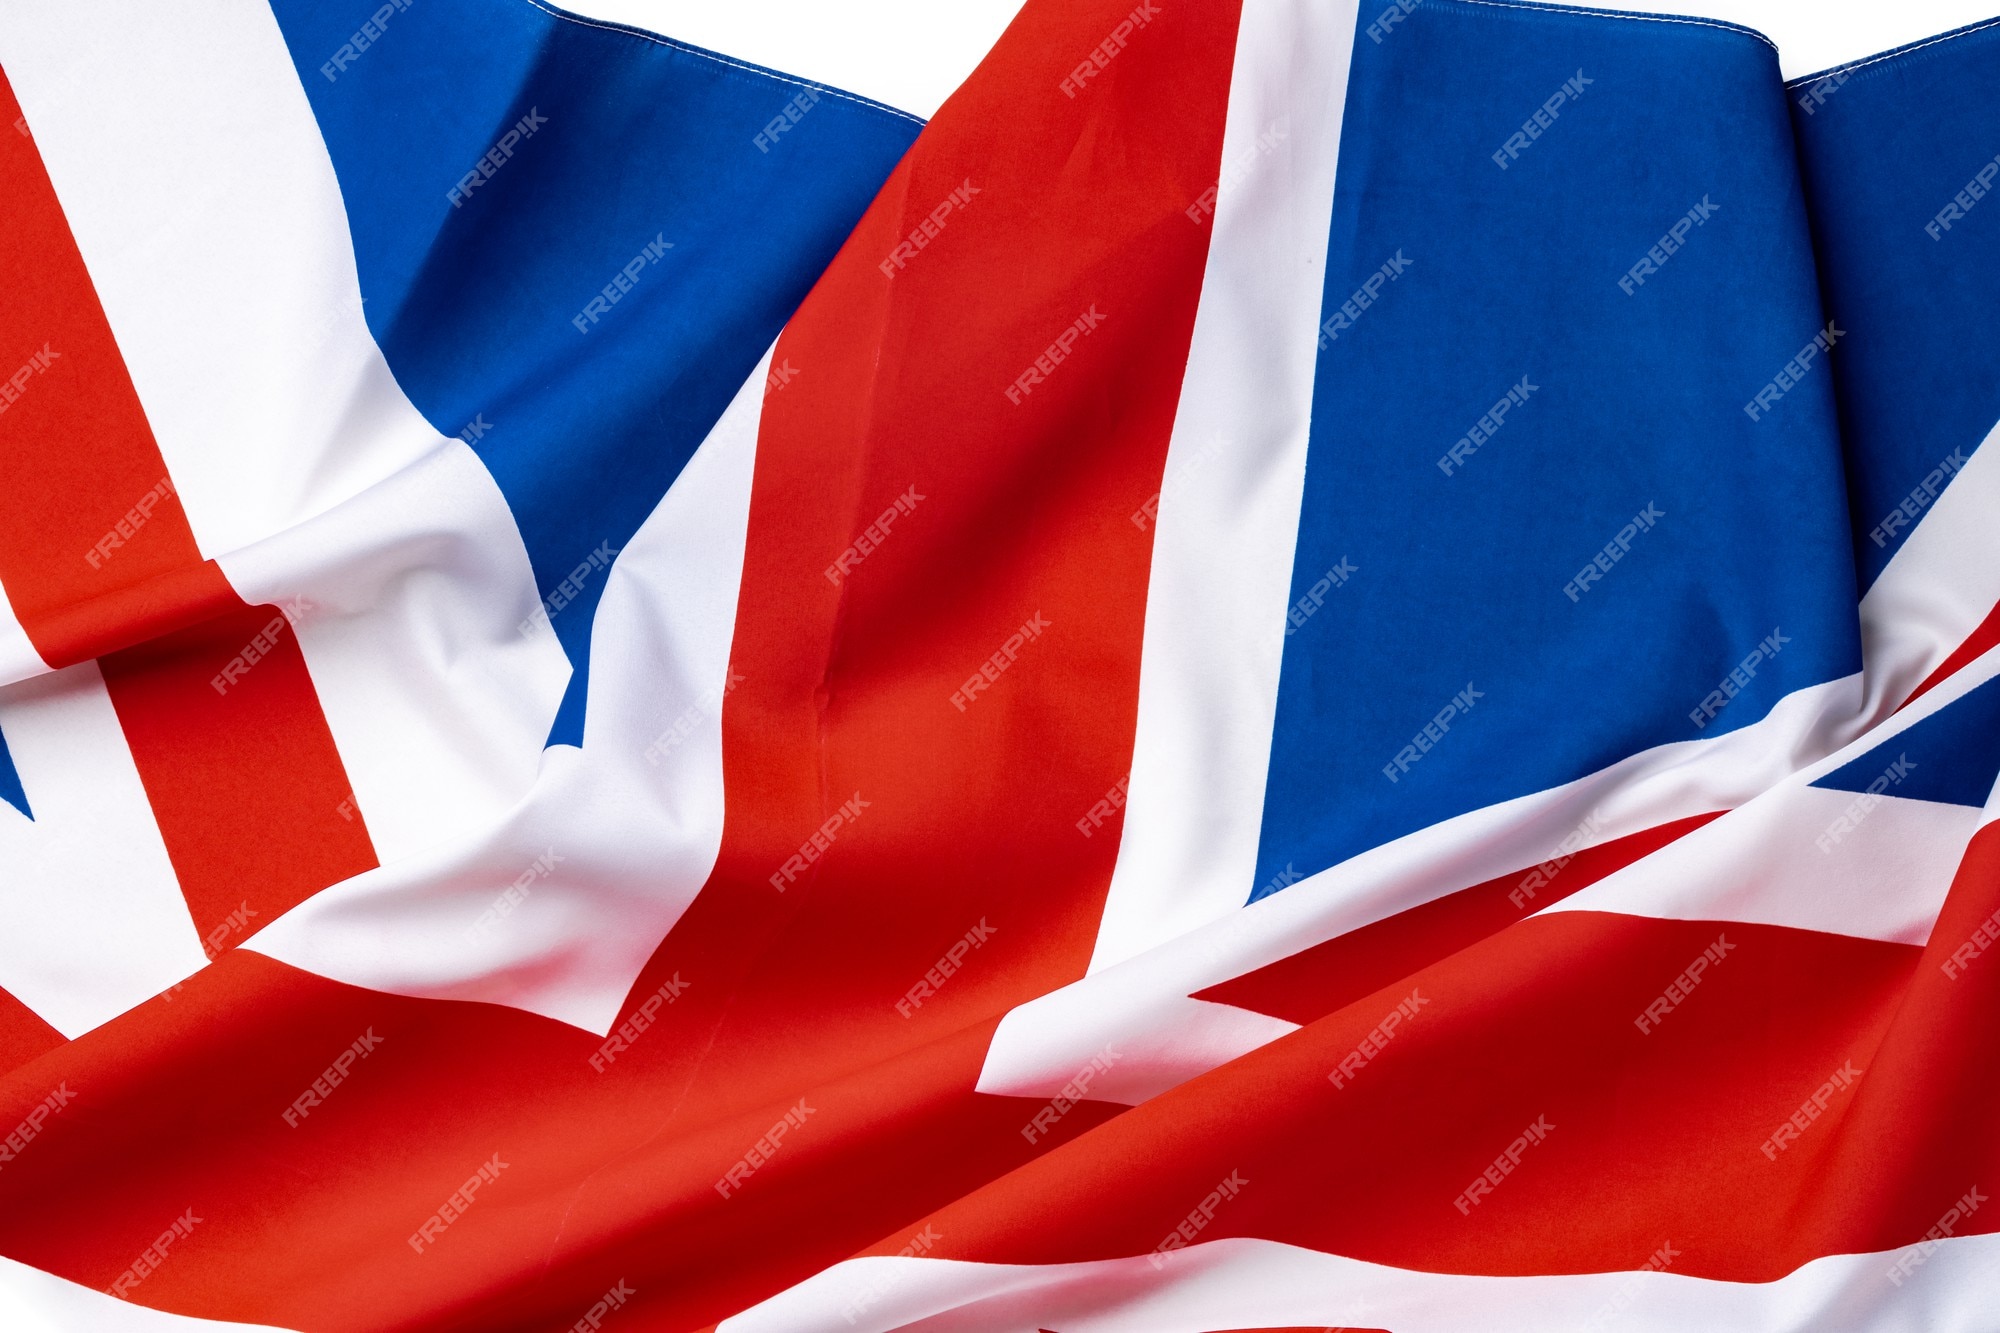 Cờ Vương quốc Anh đầy sắc màu và phong cách, tượng trưng cho lịch sử và truyền thống văn hóa của đất nước này. Hãy xem hình ảnh liên quan để thấy sự đẹp mắt của lá cờ Vương quốc Anh.